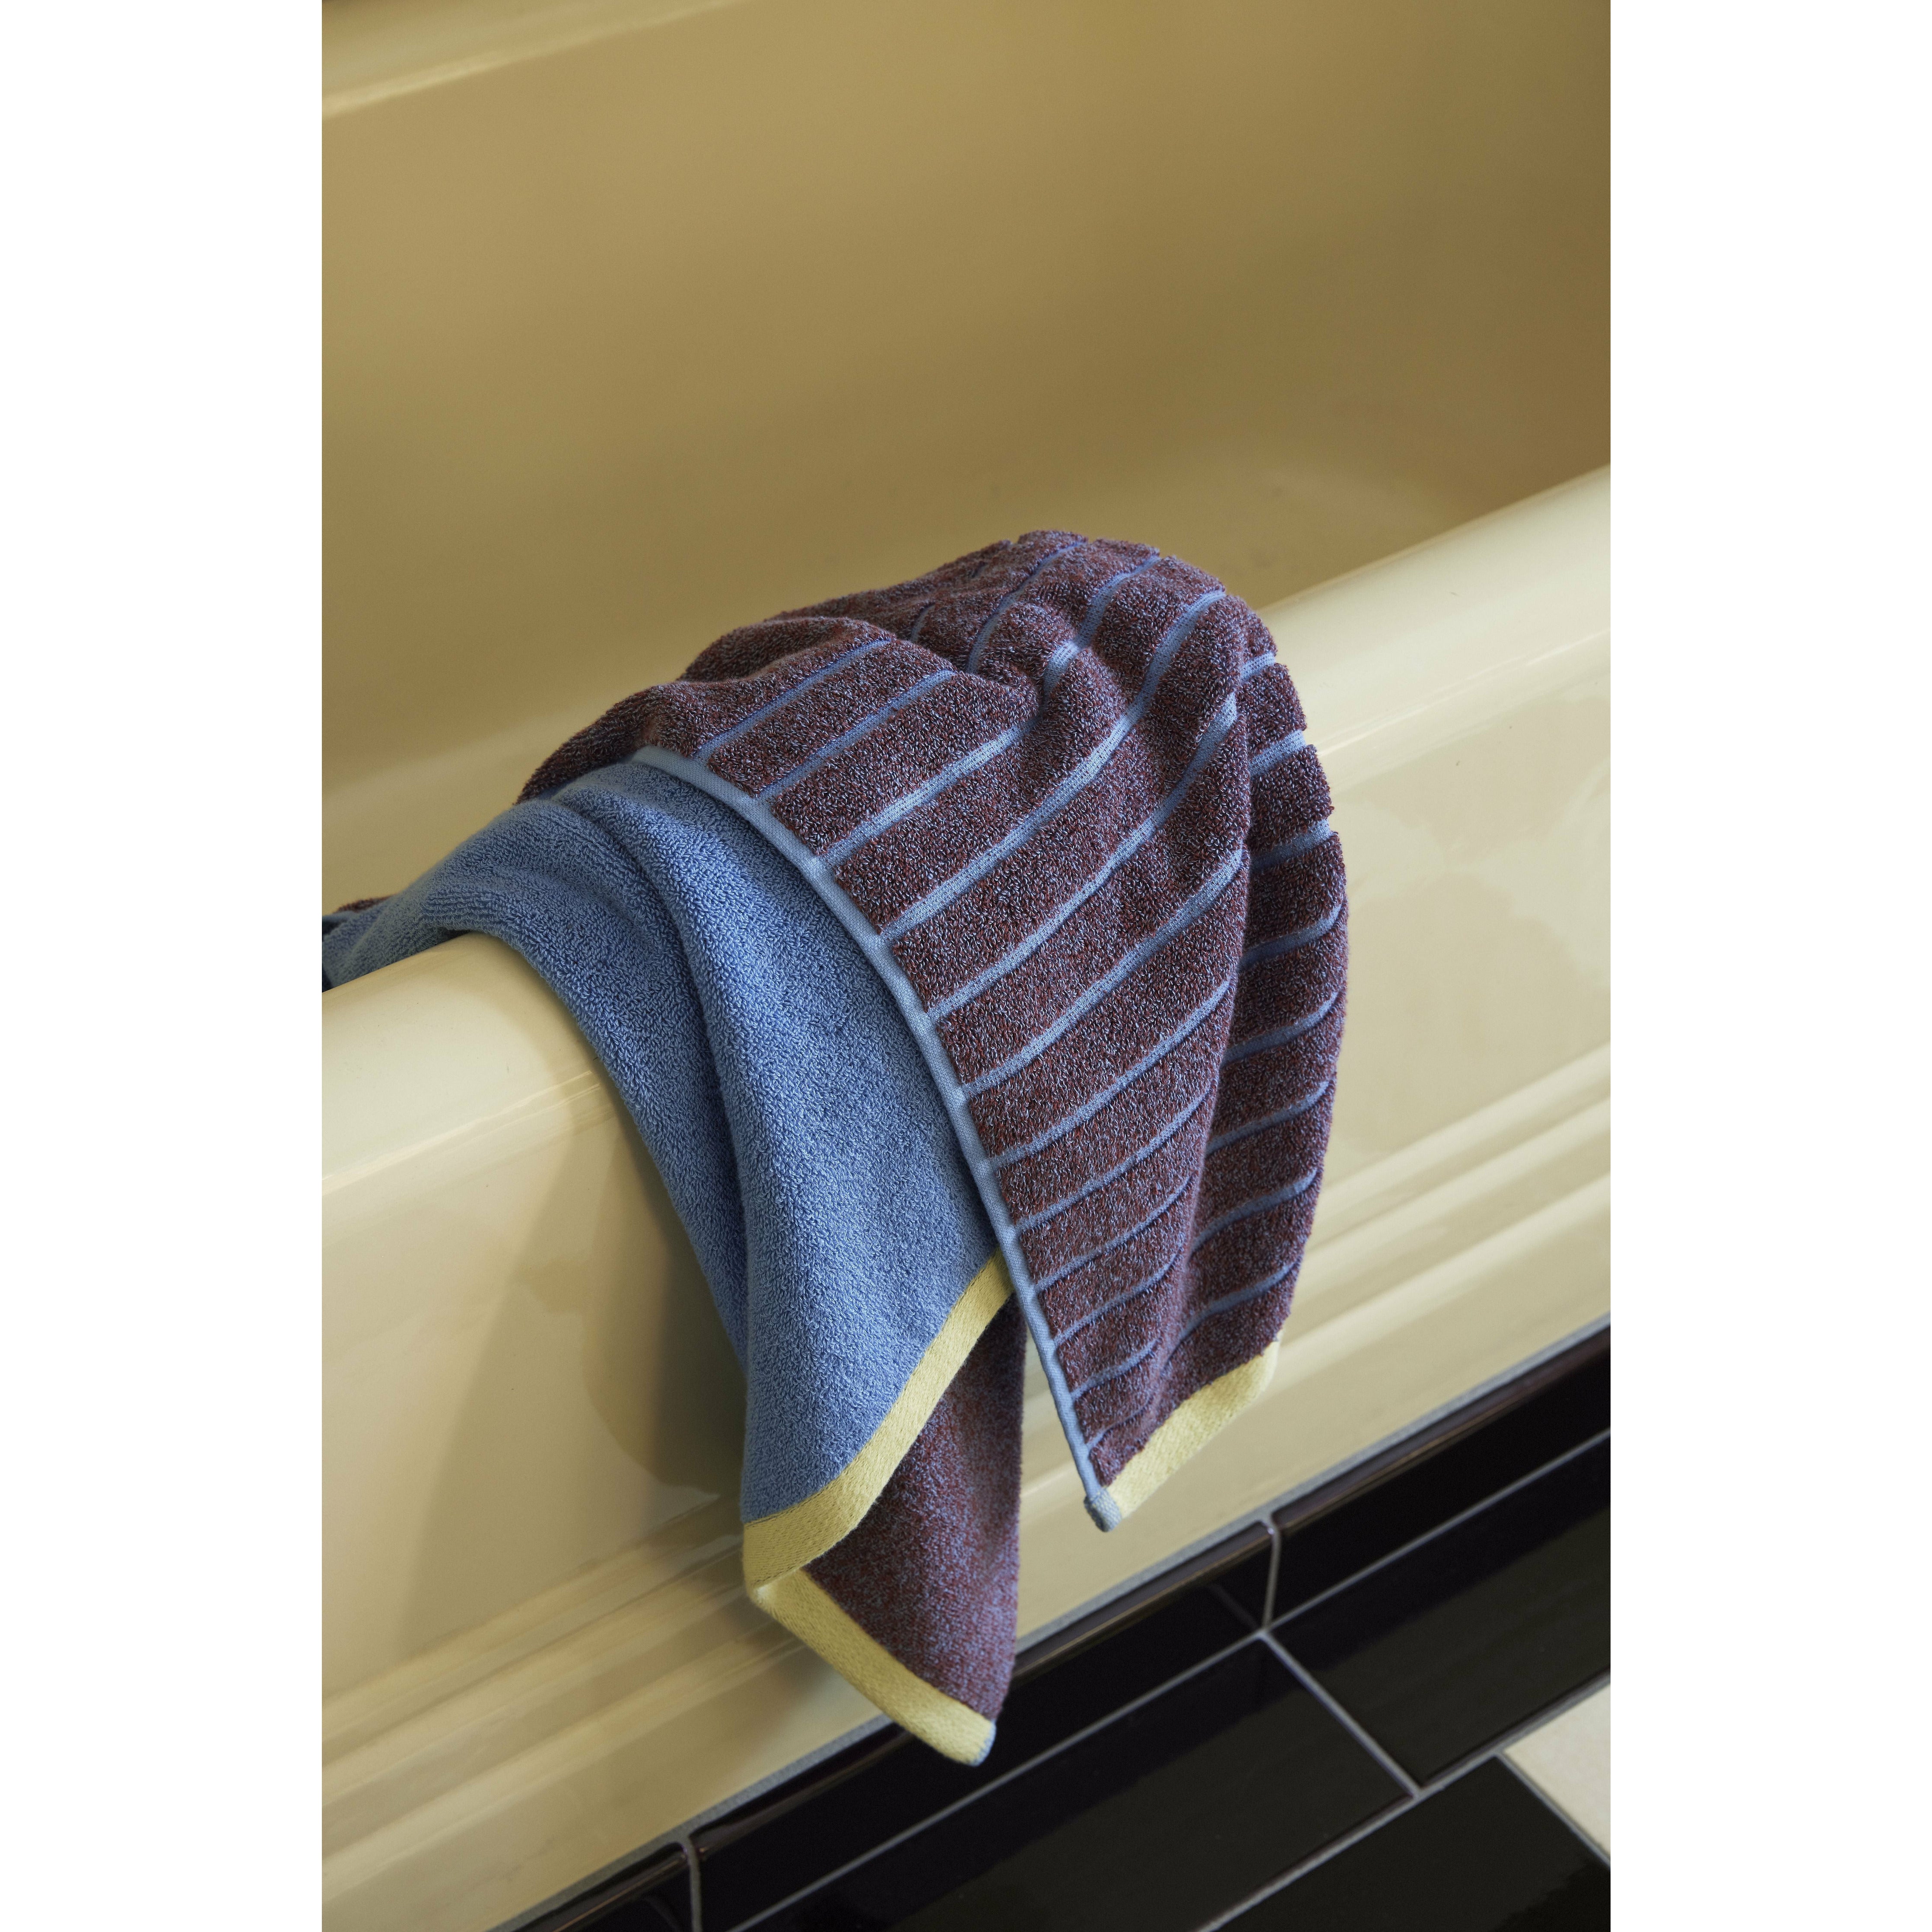 Hübsch promenadowy ręcznik duży, fioletowy/niebieski